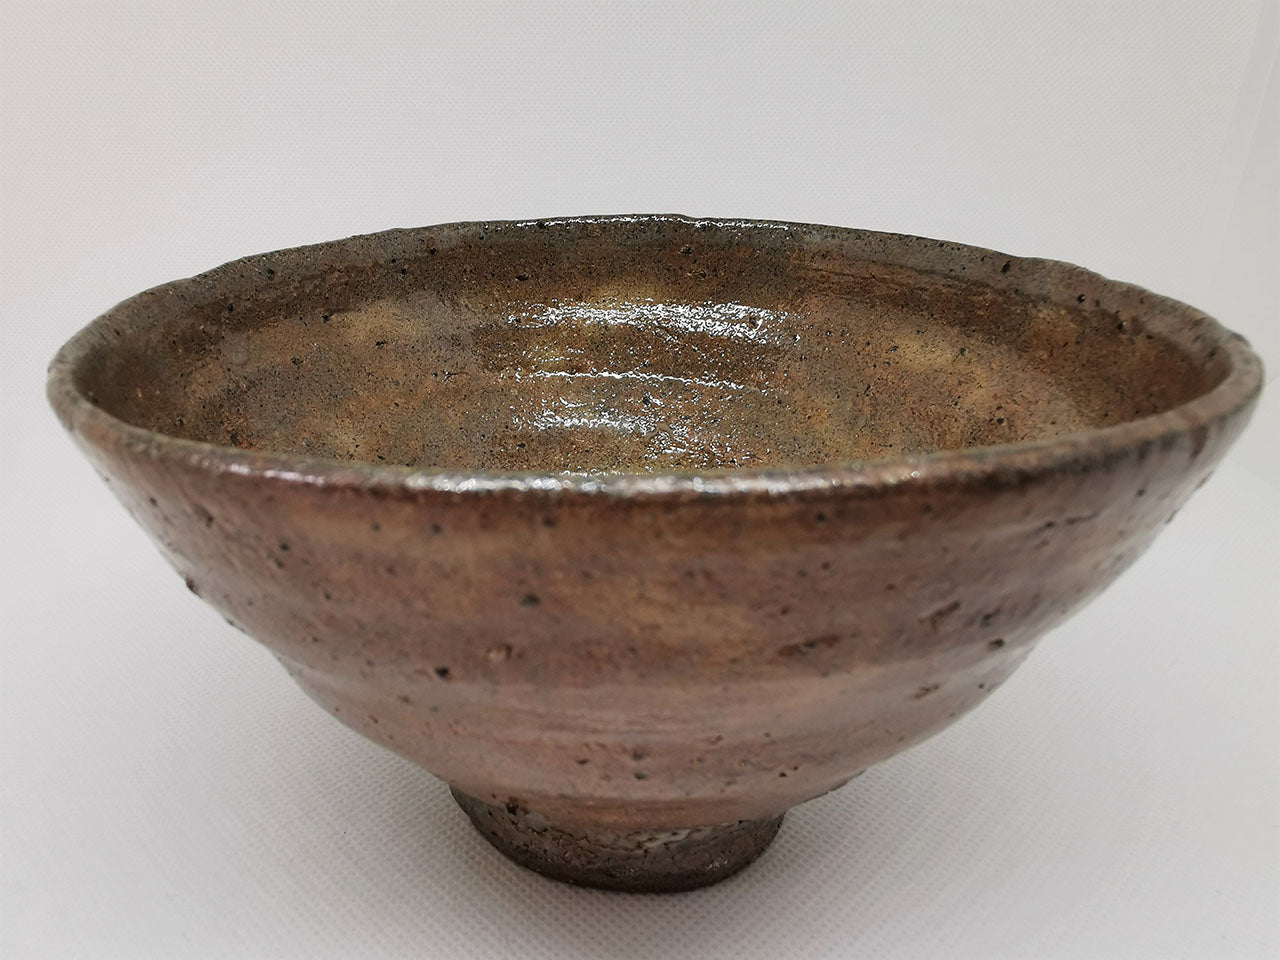 Tea ceremony utensils, Ido Matcha tea bowl - Raizan Yasunaga, Karatsu ware, Ceramics